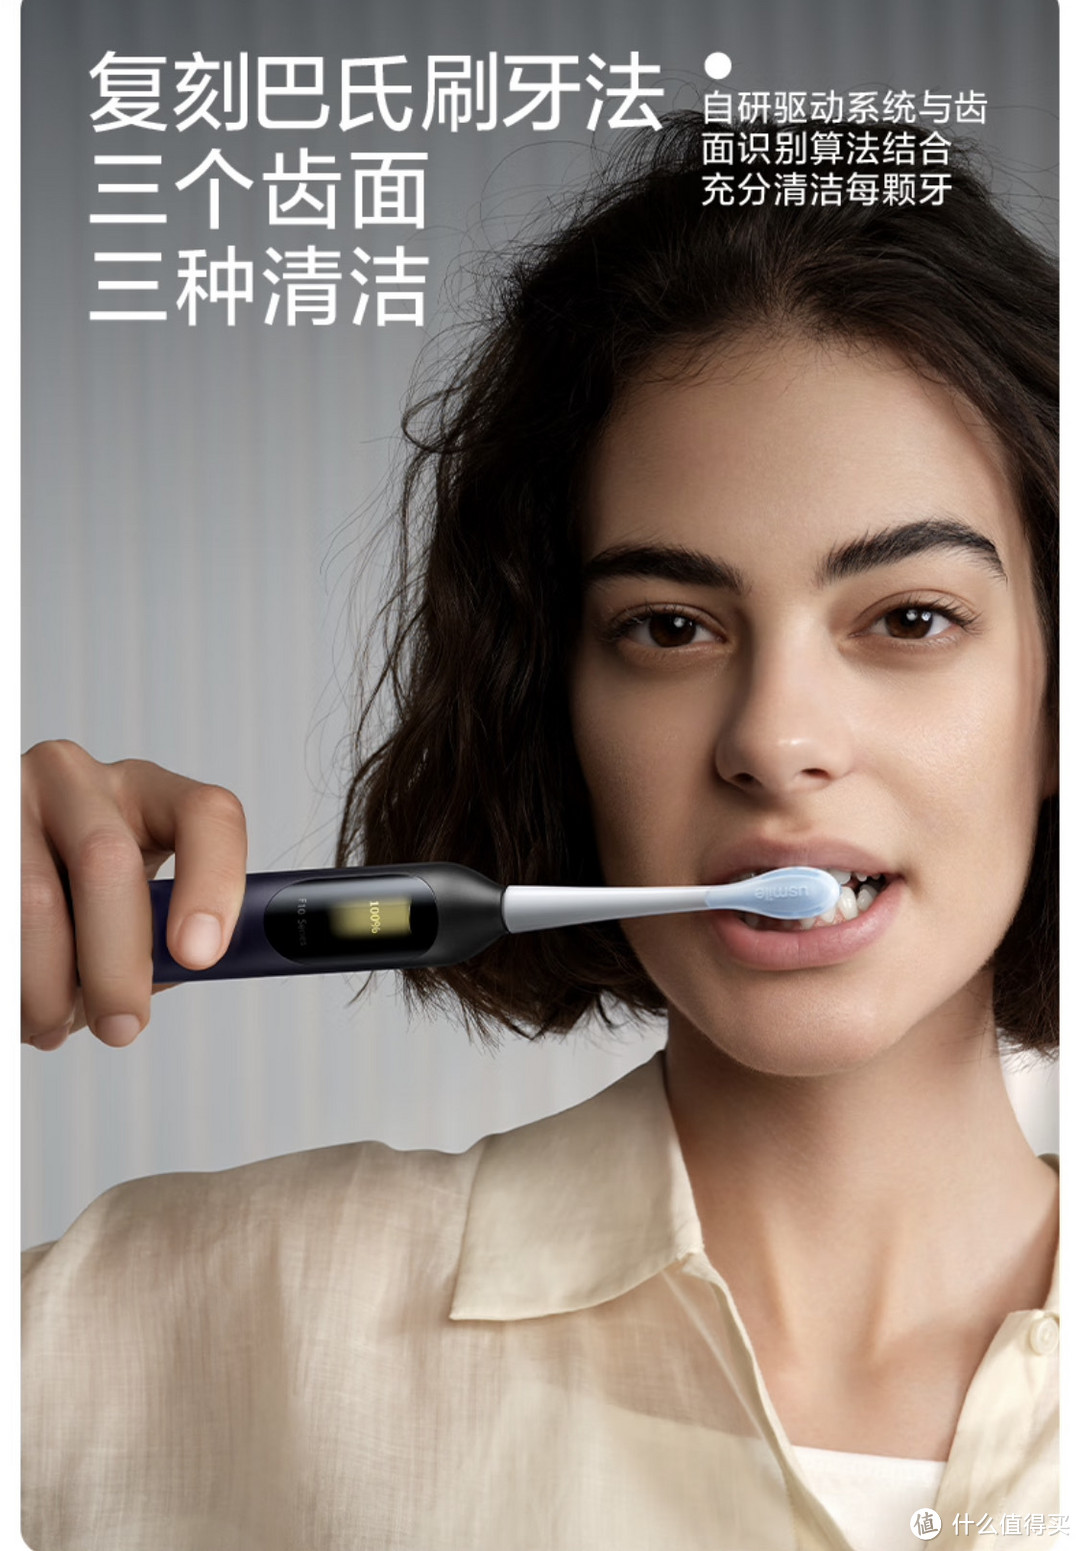 您的刷牙问题交给usmile笑容加双面屏电动数字牙刷F10 PRO。